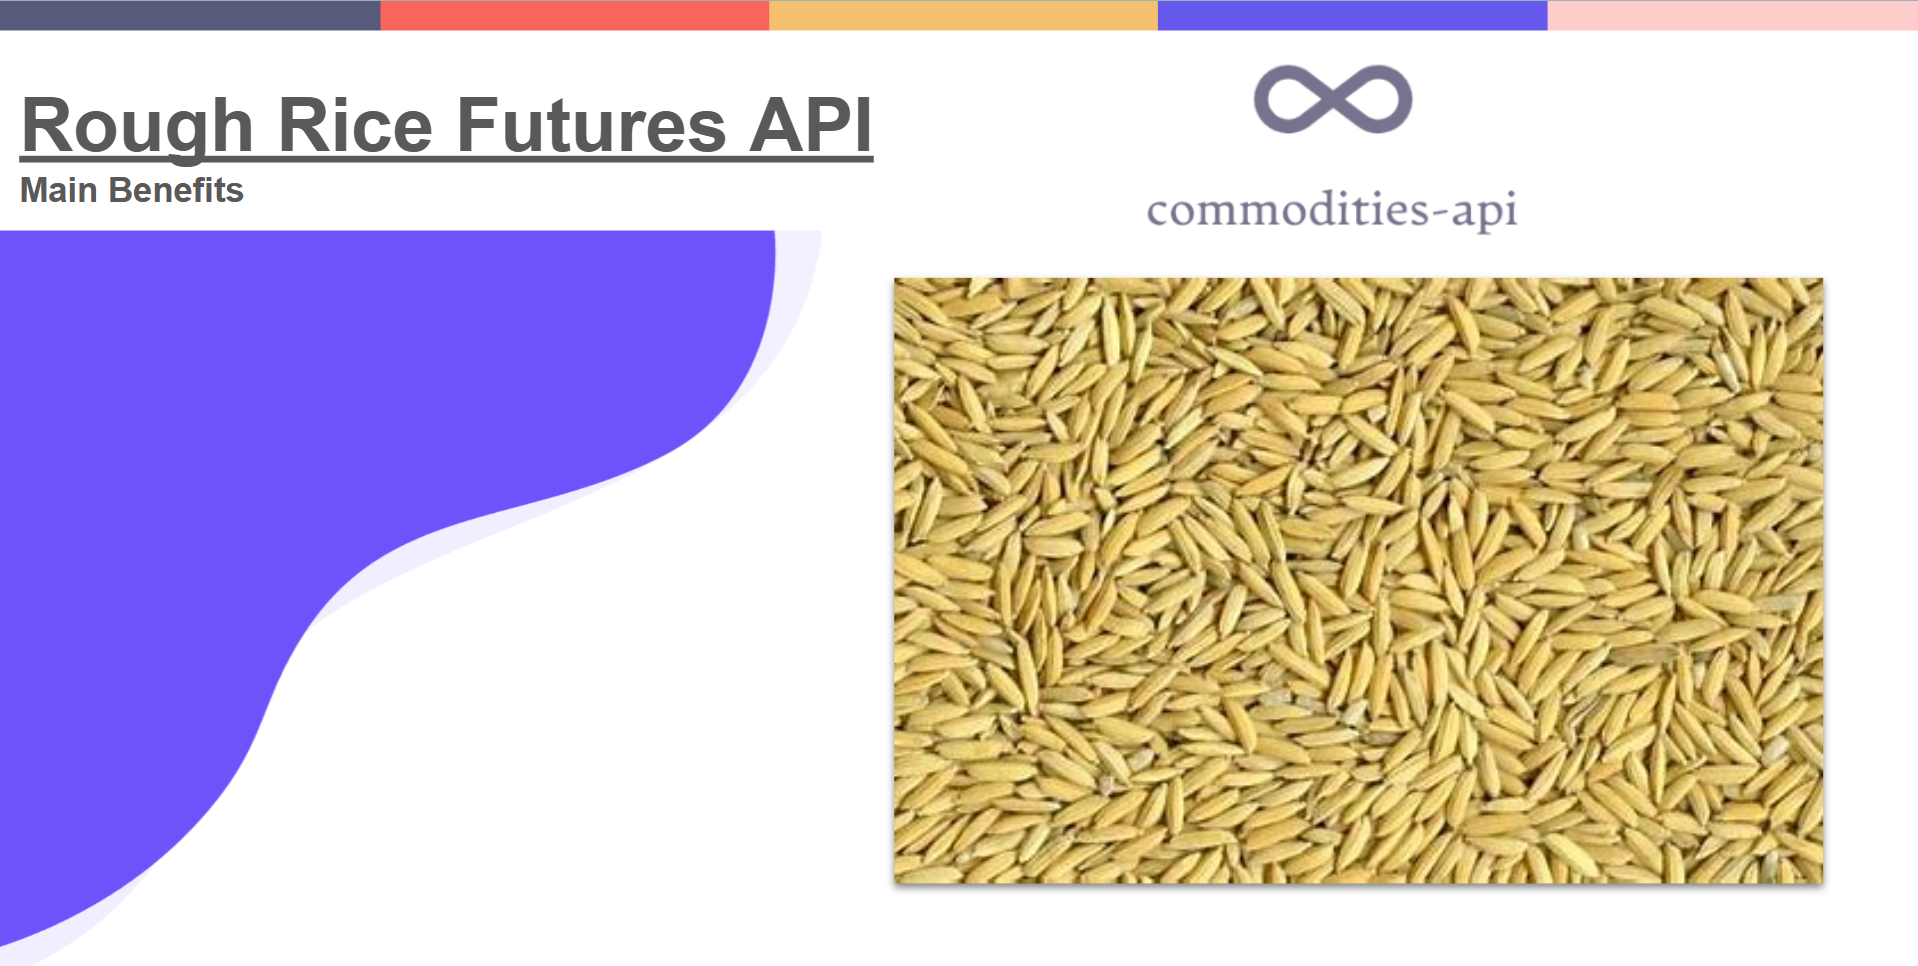 Rough Rice Futures API: Main Benefits